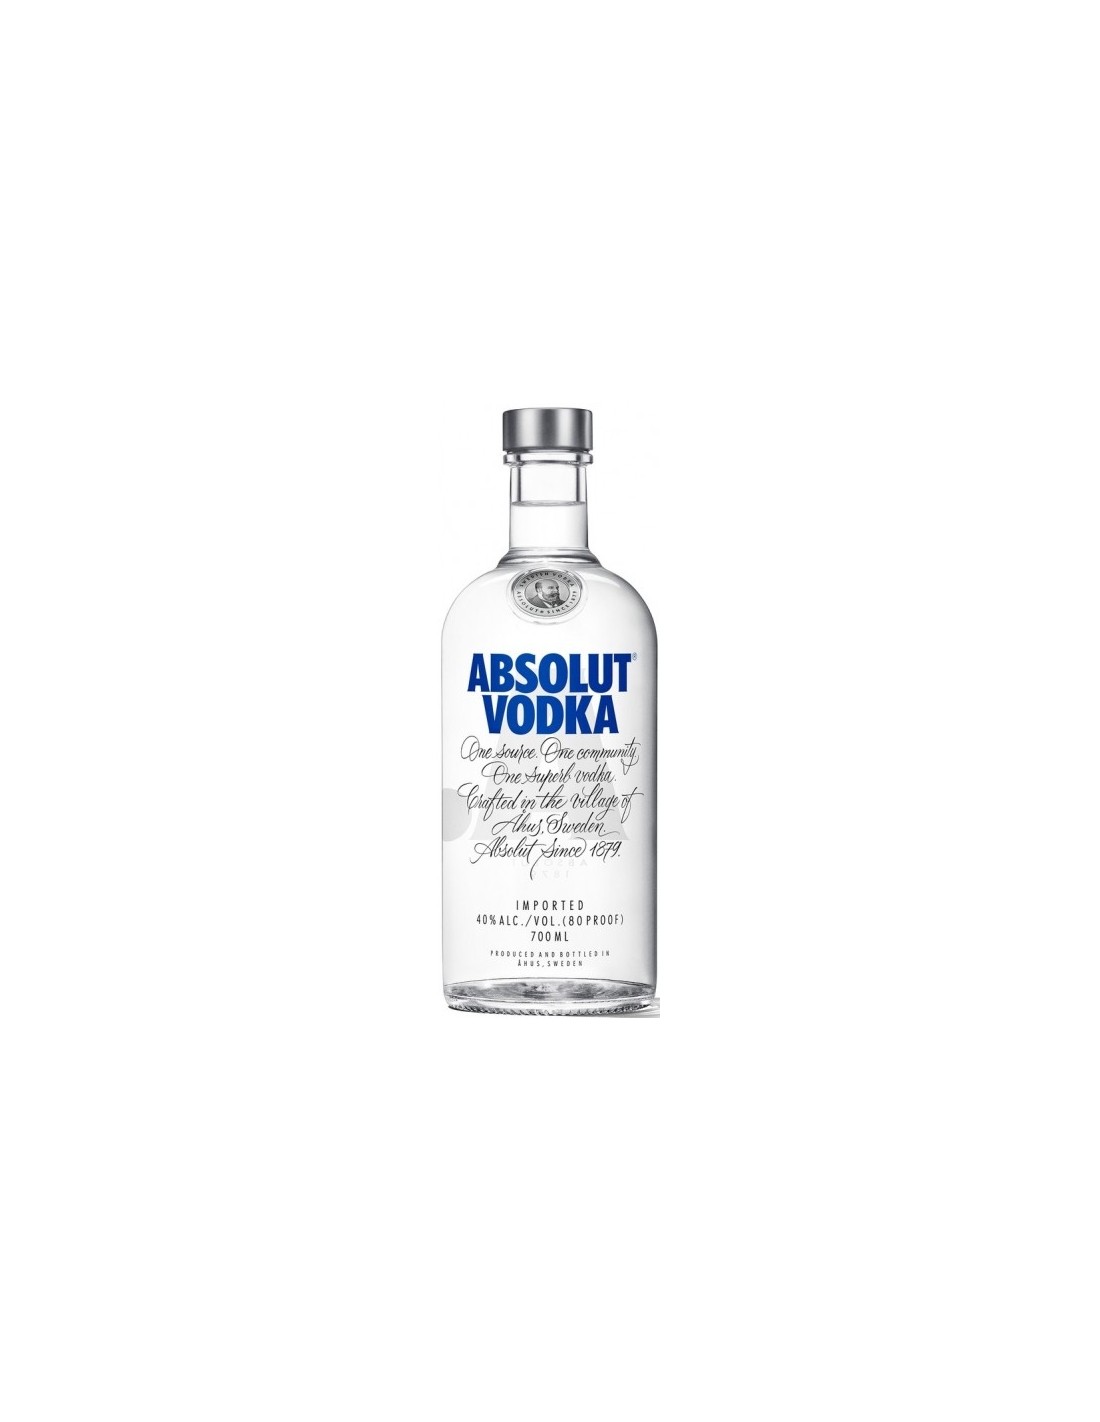 Vodca Absolut Blue, 0.7L, 40% alc., Suedia alcooldiscount.ro